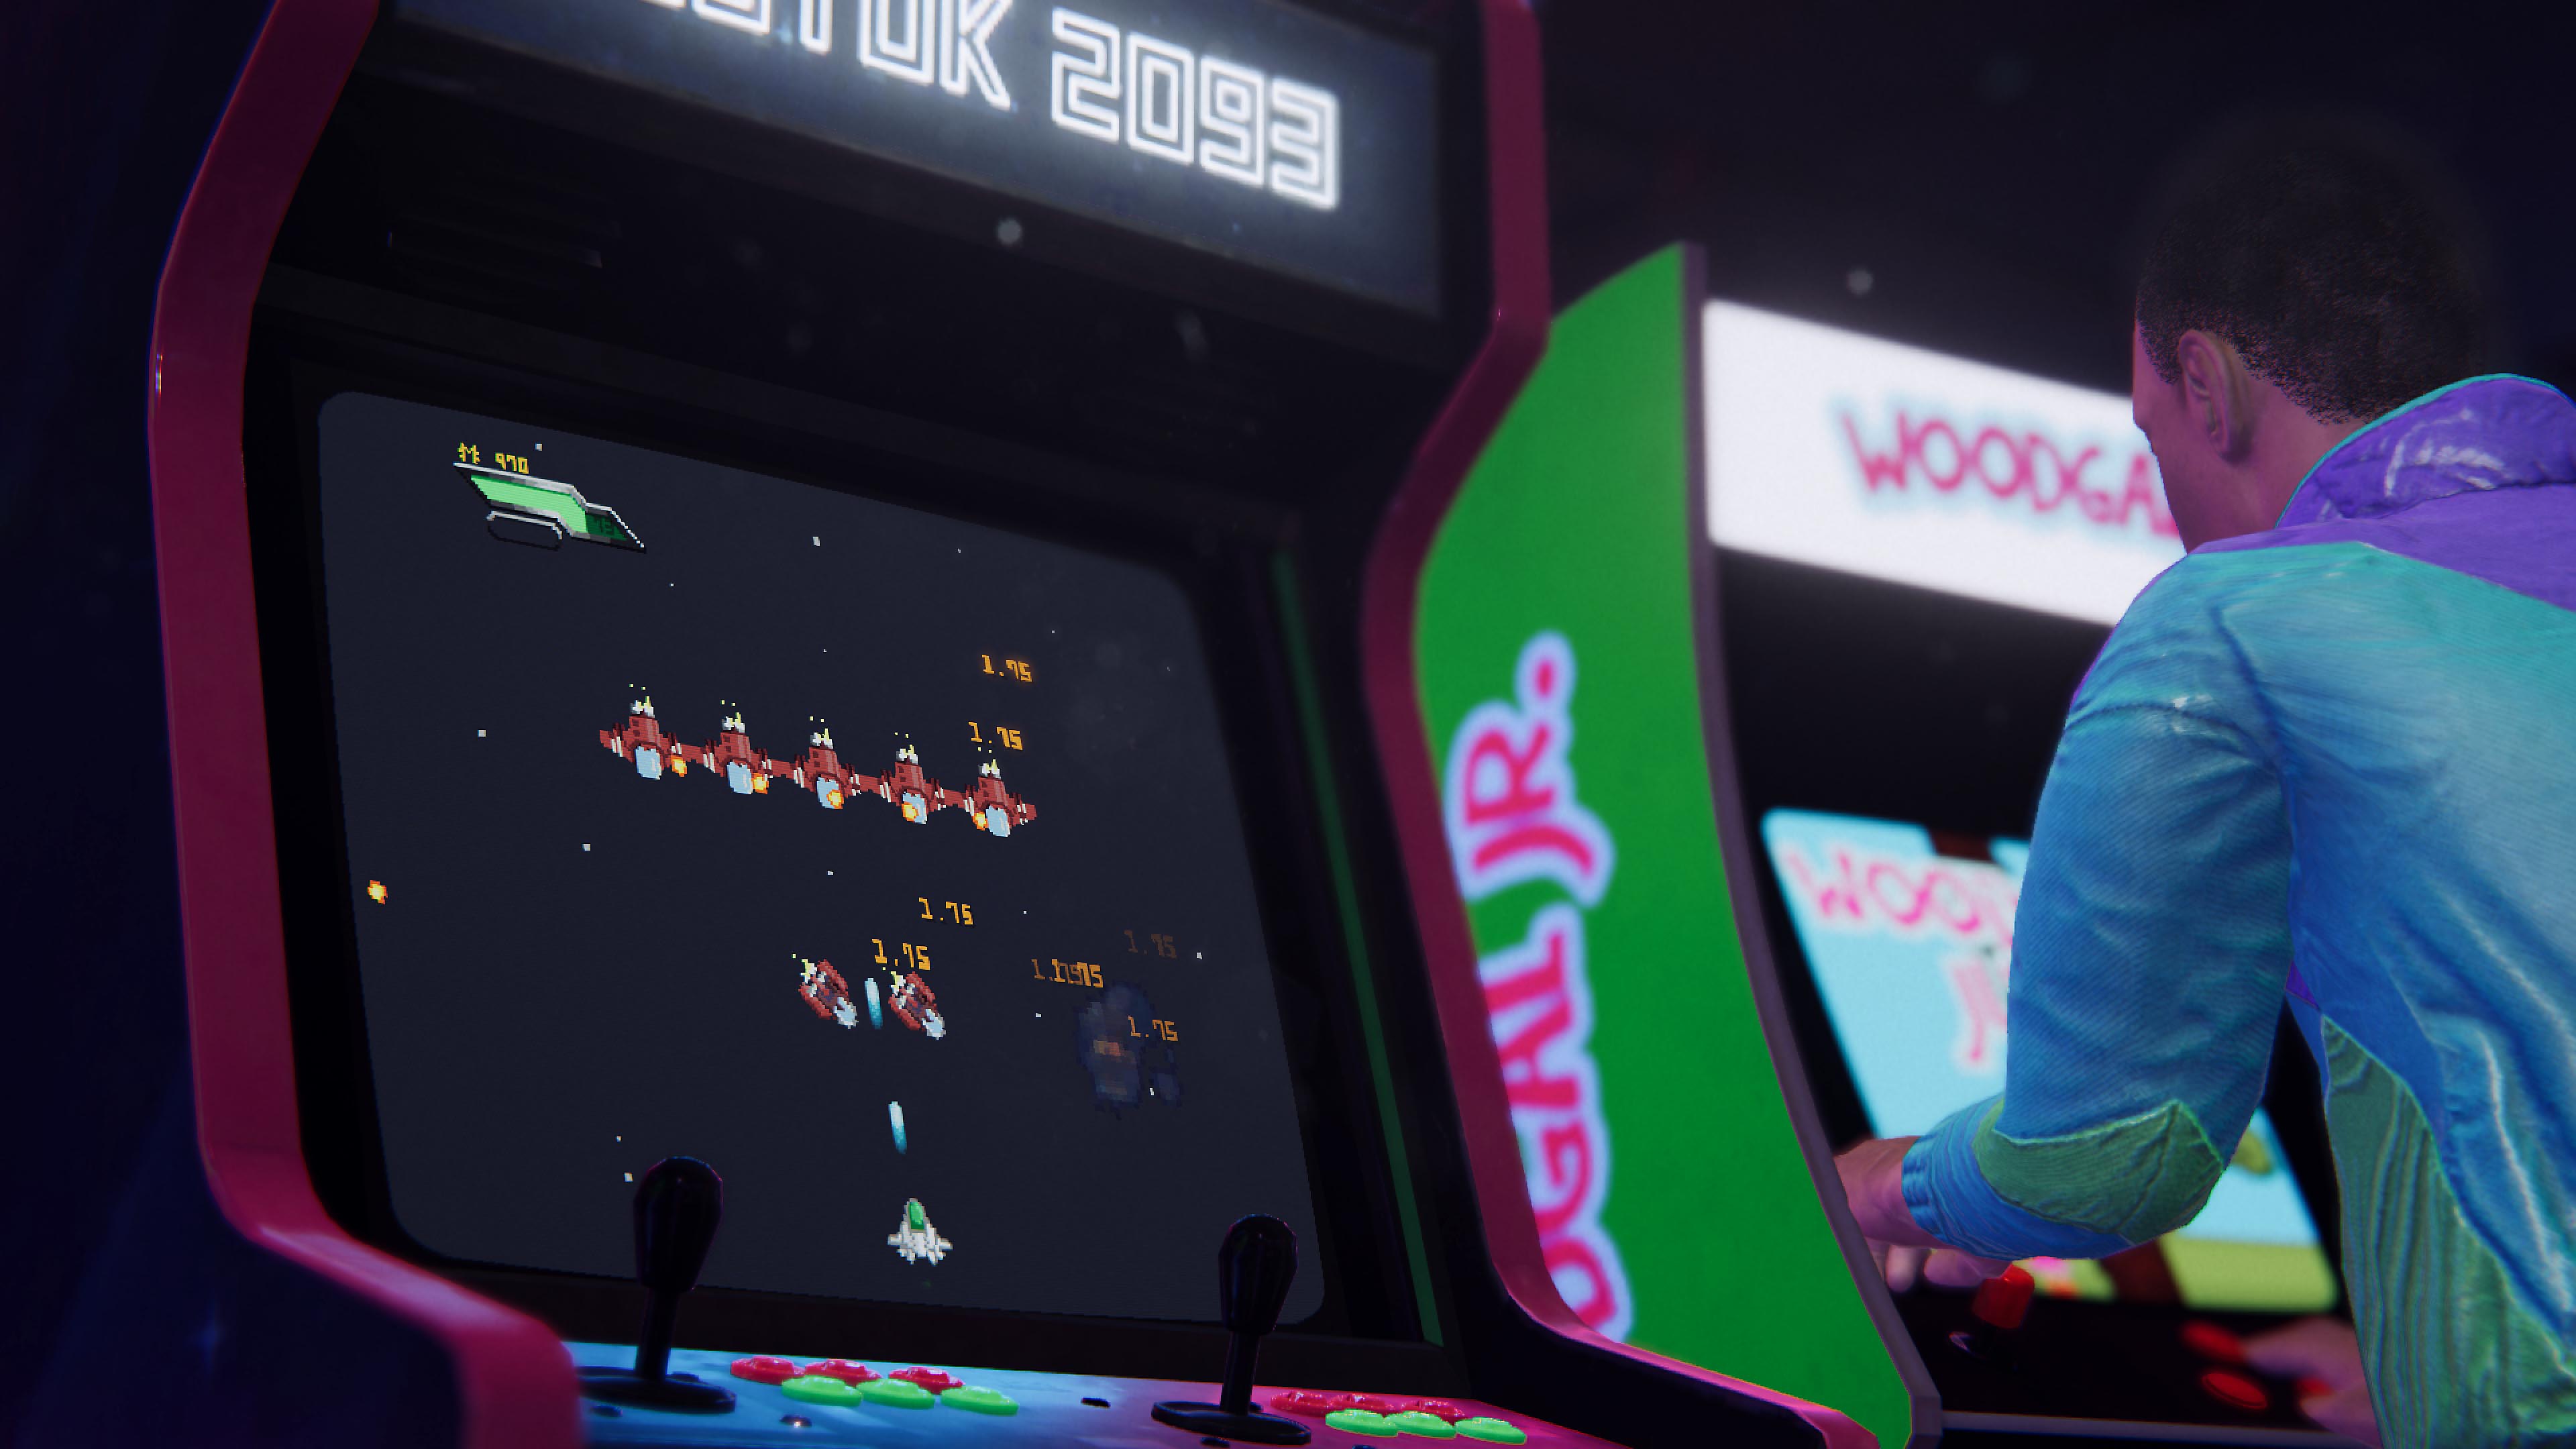 Arcade Paradise – snímek obrazovky zobrazující dva retro videoherní automaty